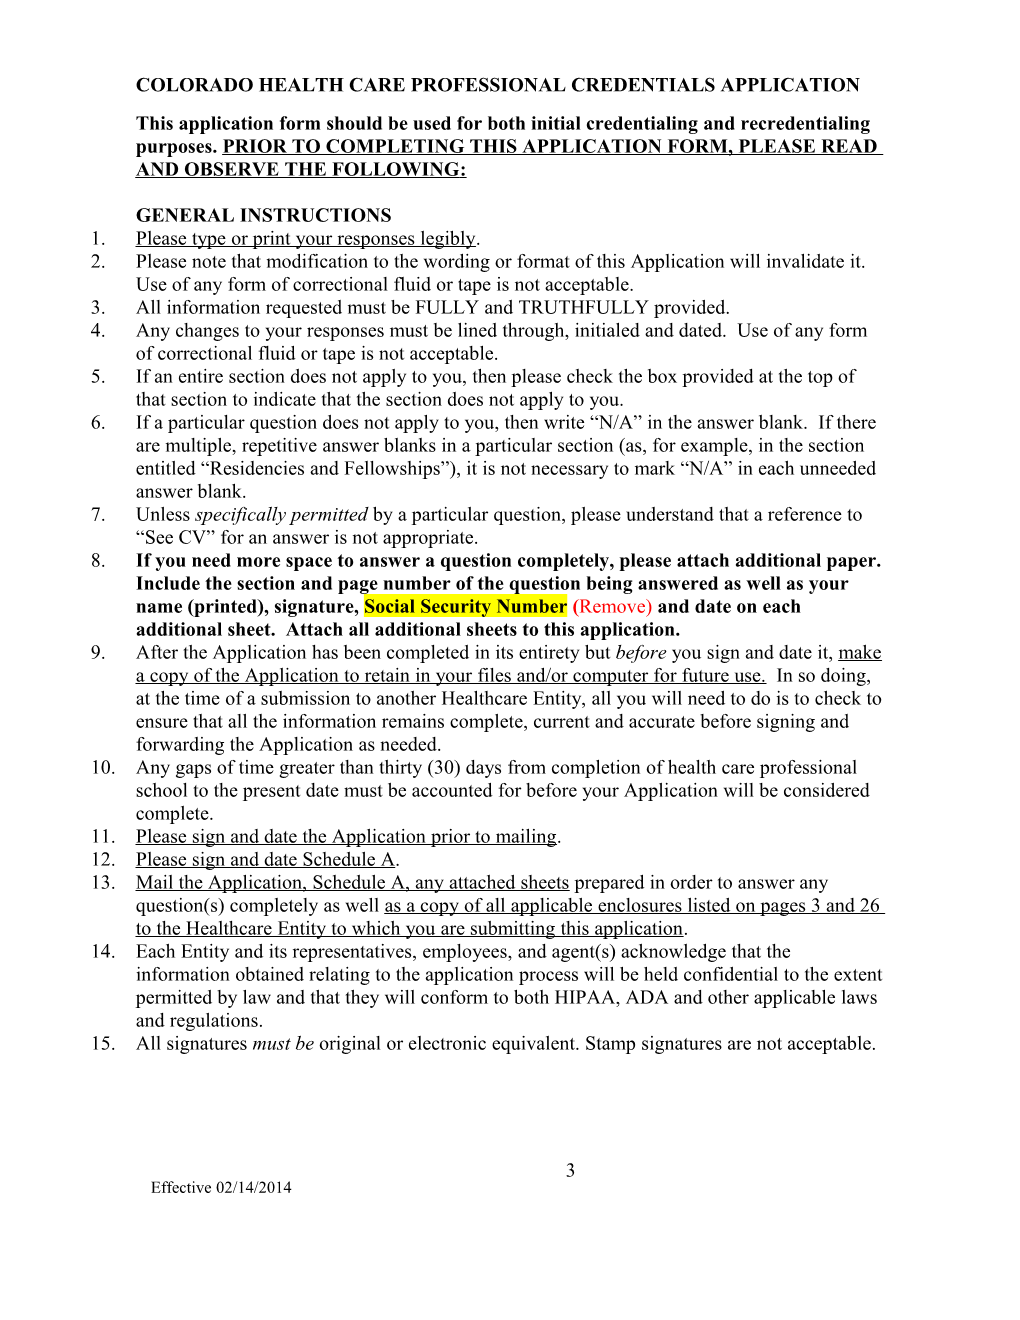 Colorado Healthcare Professional Credentials Application (CHCPCA)-Word Version s1